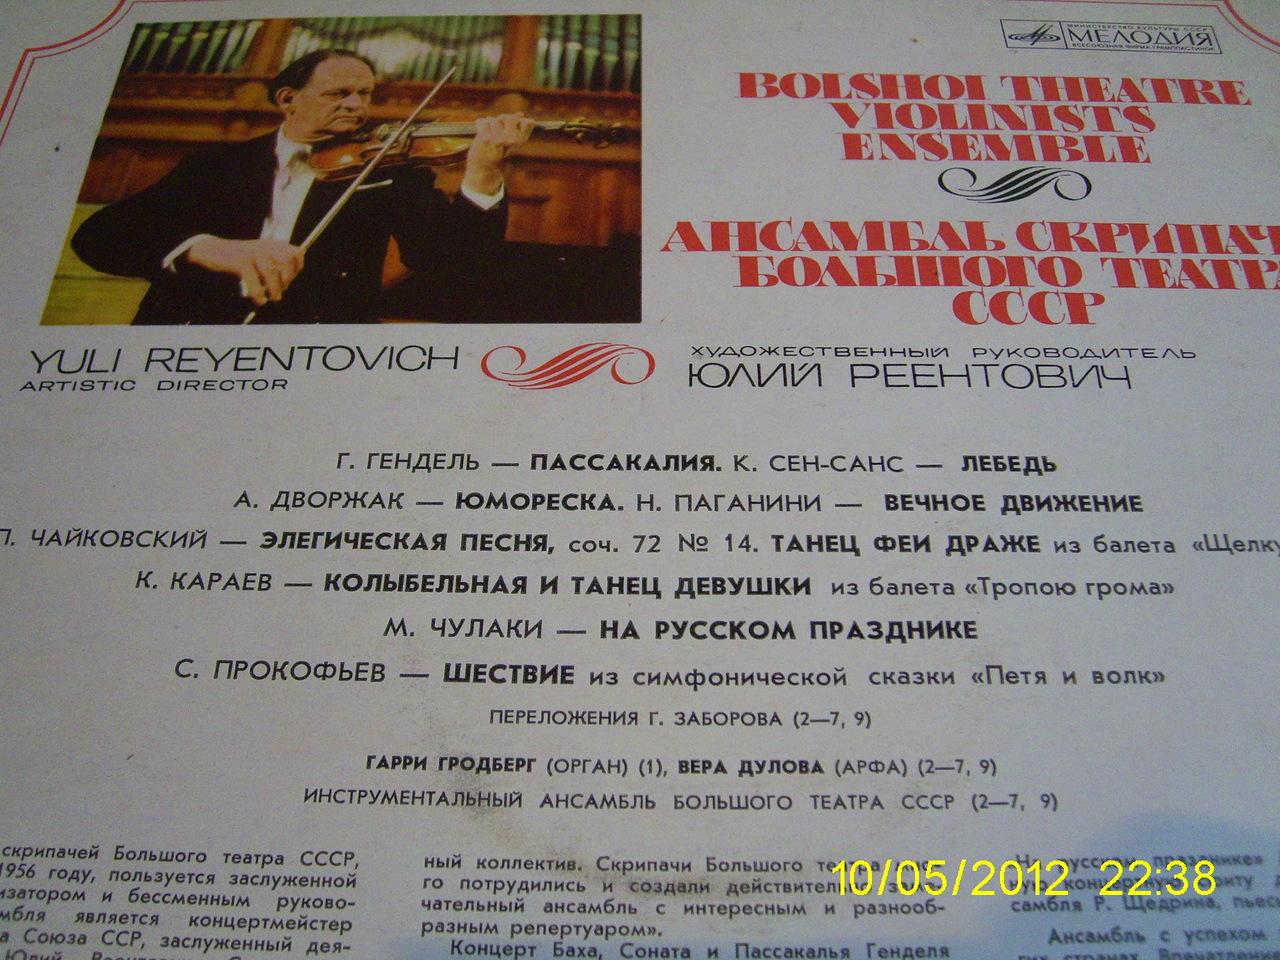 Ансамбль скрипачей Большого театра